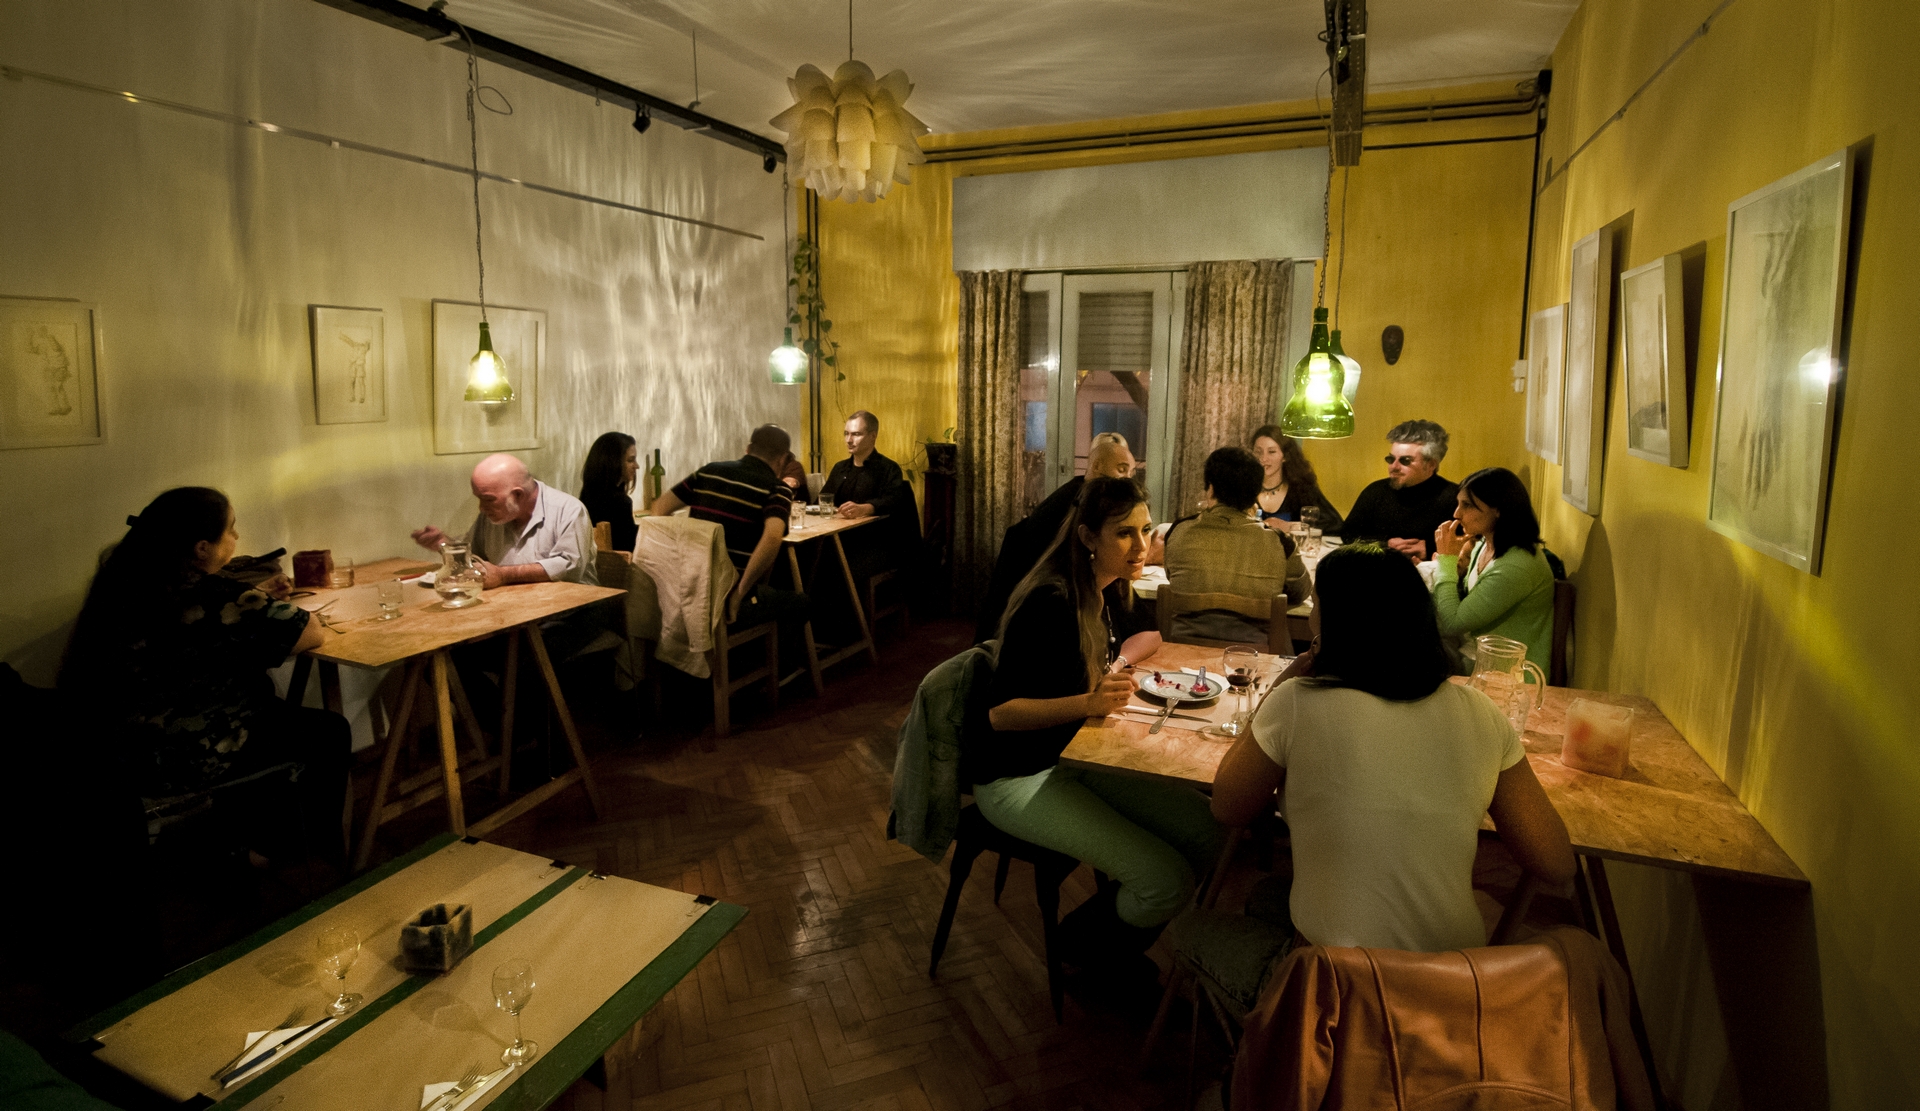 Το σαλόνι του Χρήστου Ελευθεριάδη στο Μπουένος Άιρες κάθε Παρασκευή και Σάββατο μετατρέπεται σε εστιατόριο ελληνικής κουζίνας